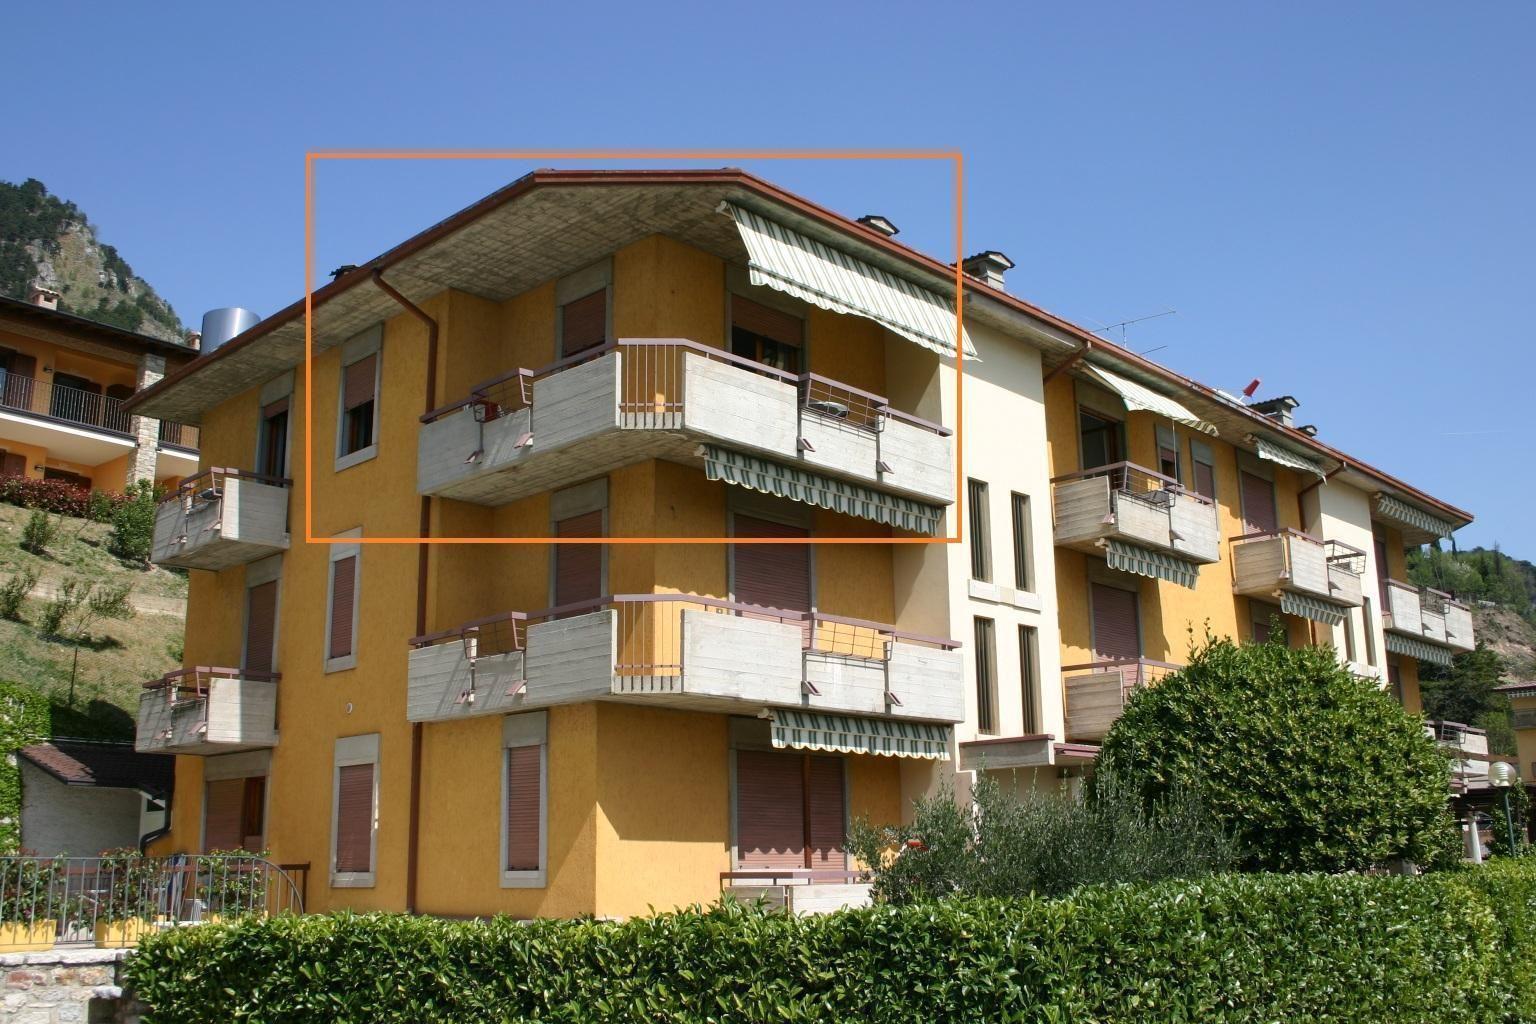 Appartement in der zweiten Etage mit Balkon  in Italien